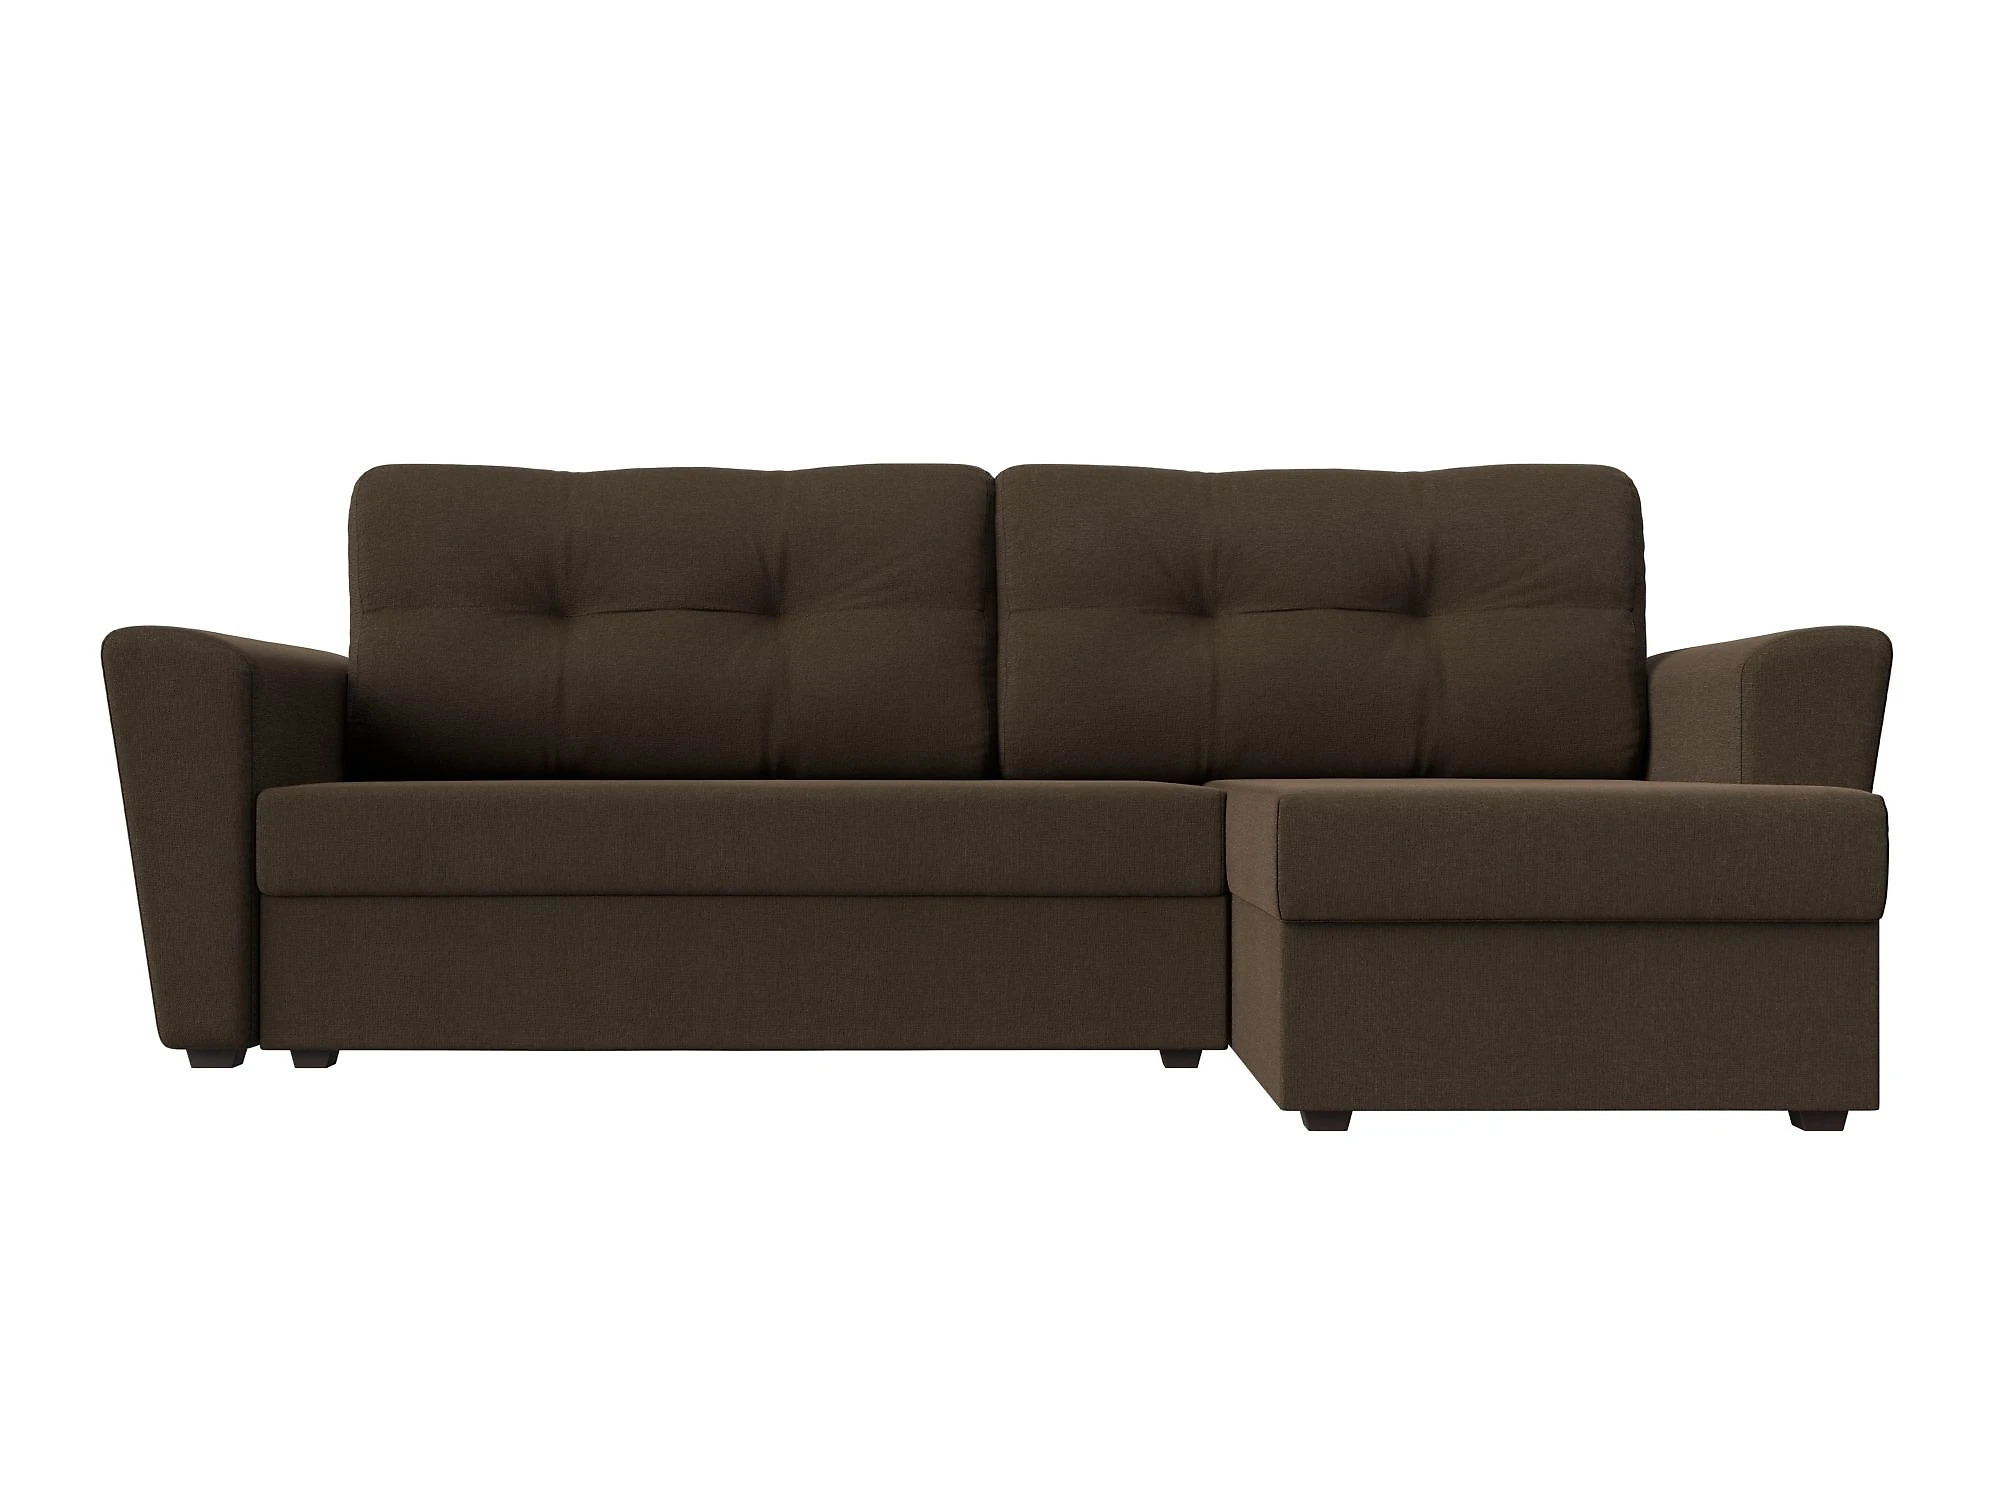  угловой диван из рогожки Амстердам Лайт Кантри Дизайн 2